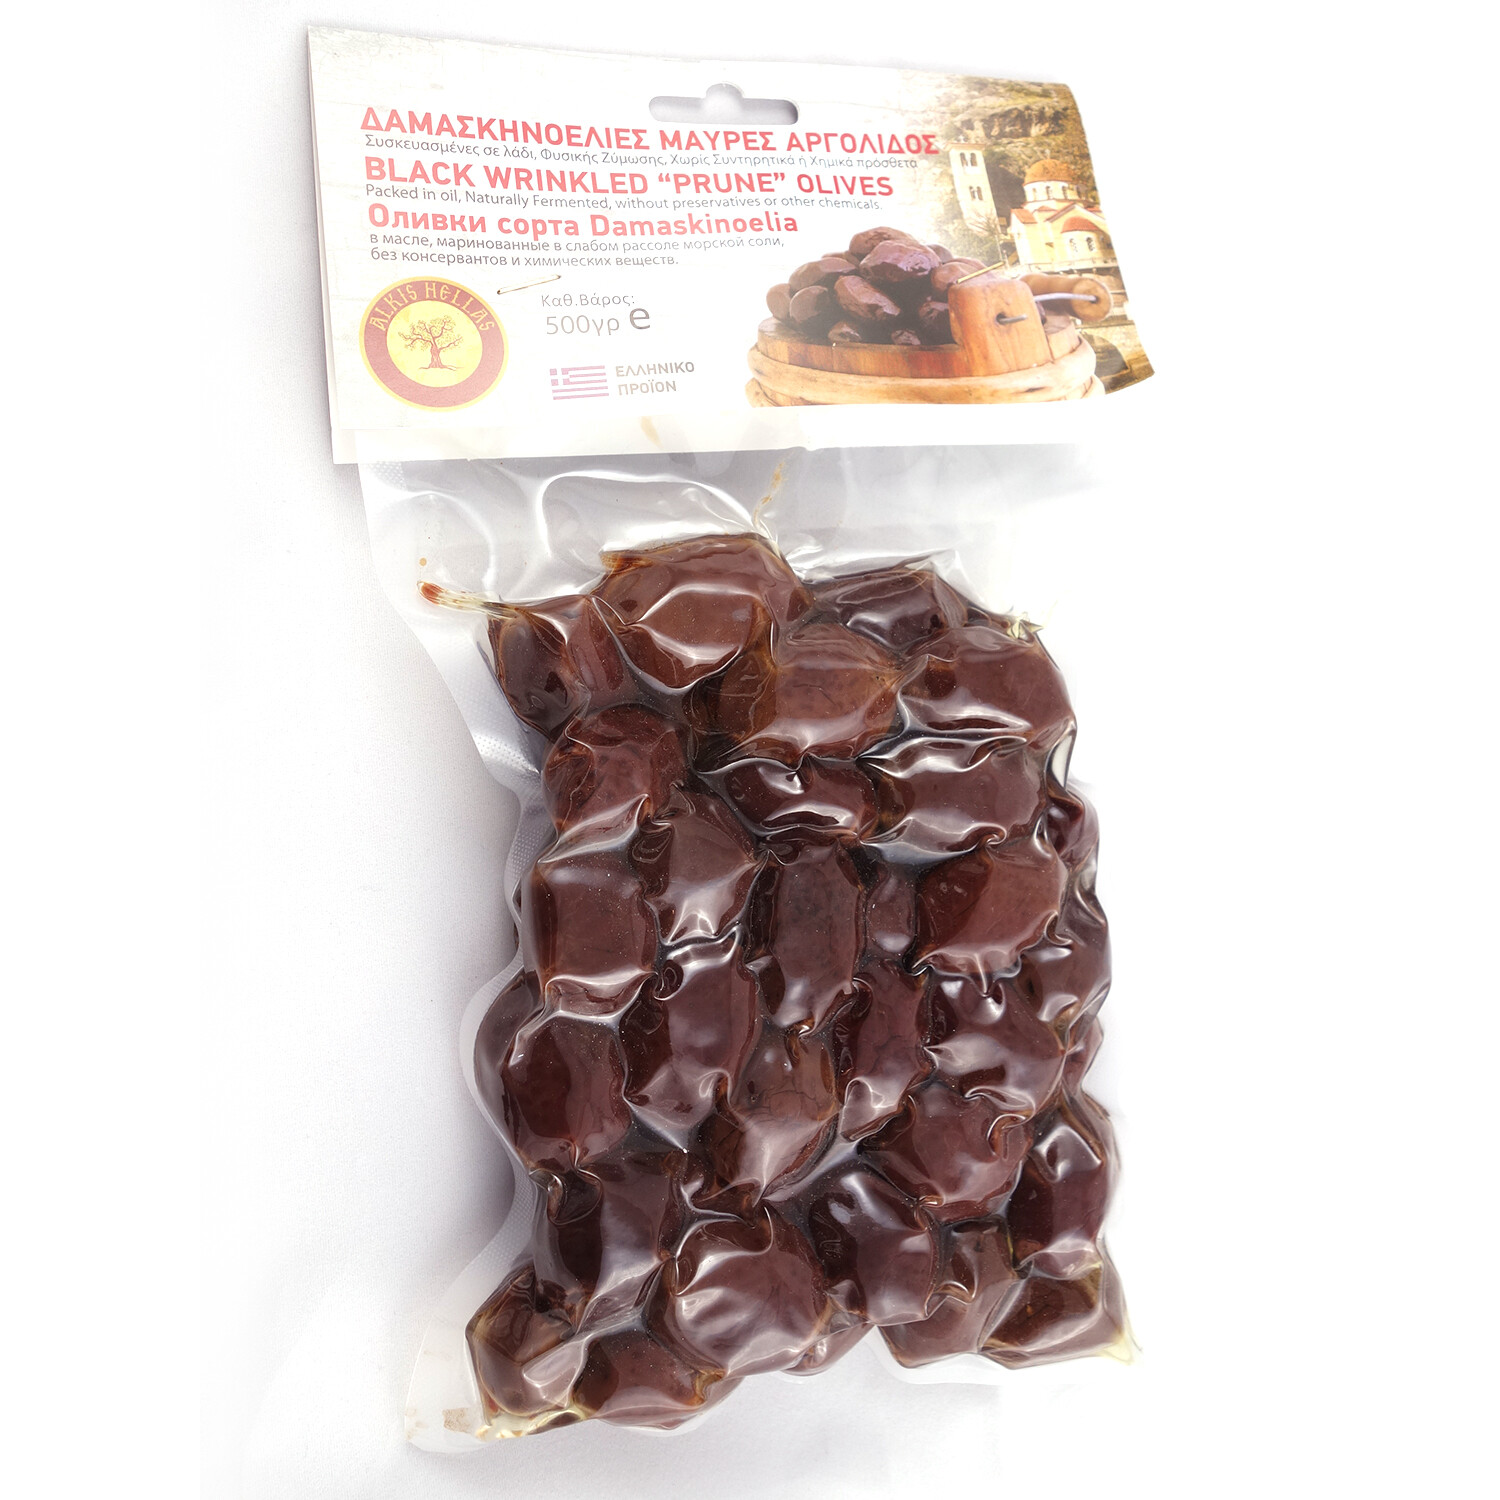 Black Prune Olives from Argolis